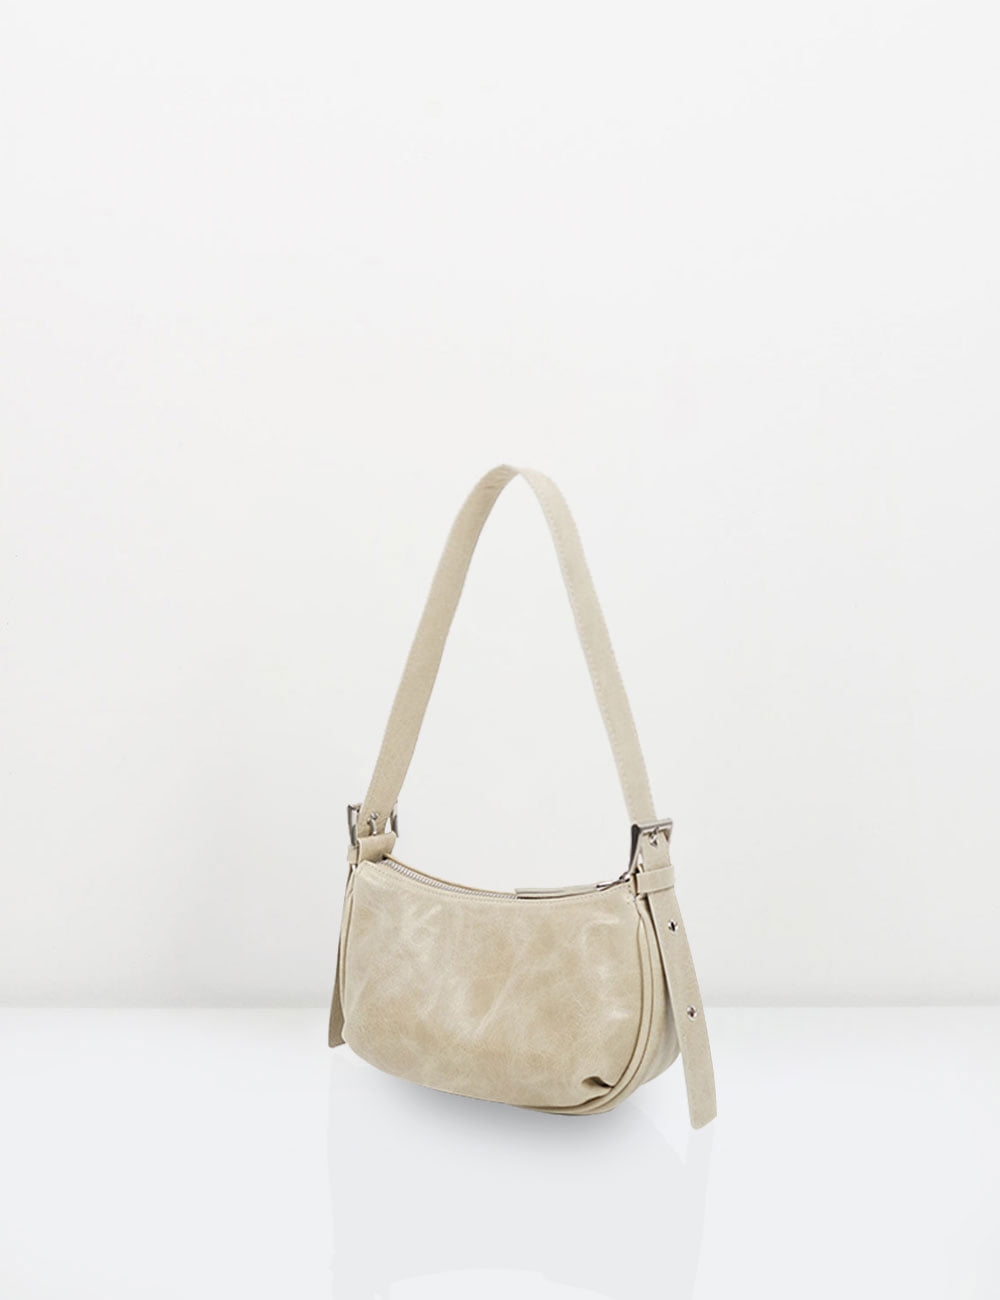 Milli bag / light beige (sold out)